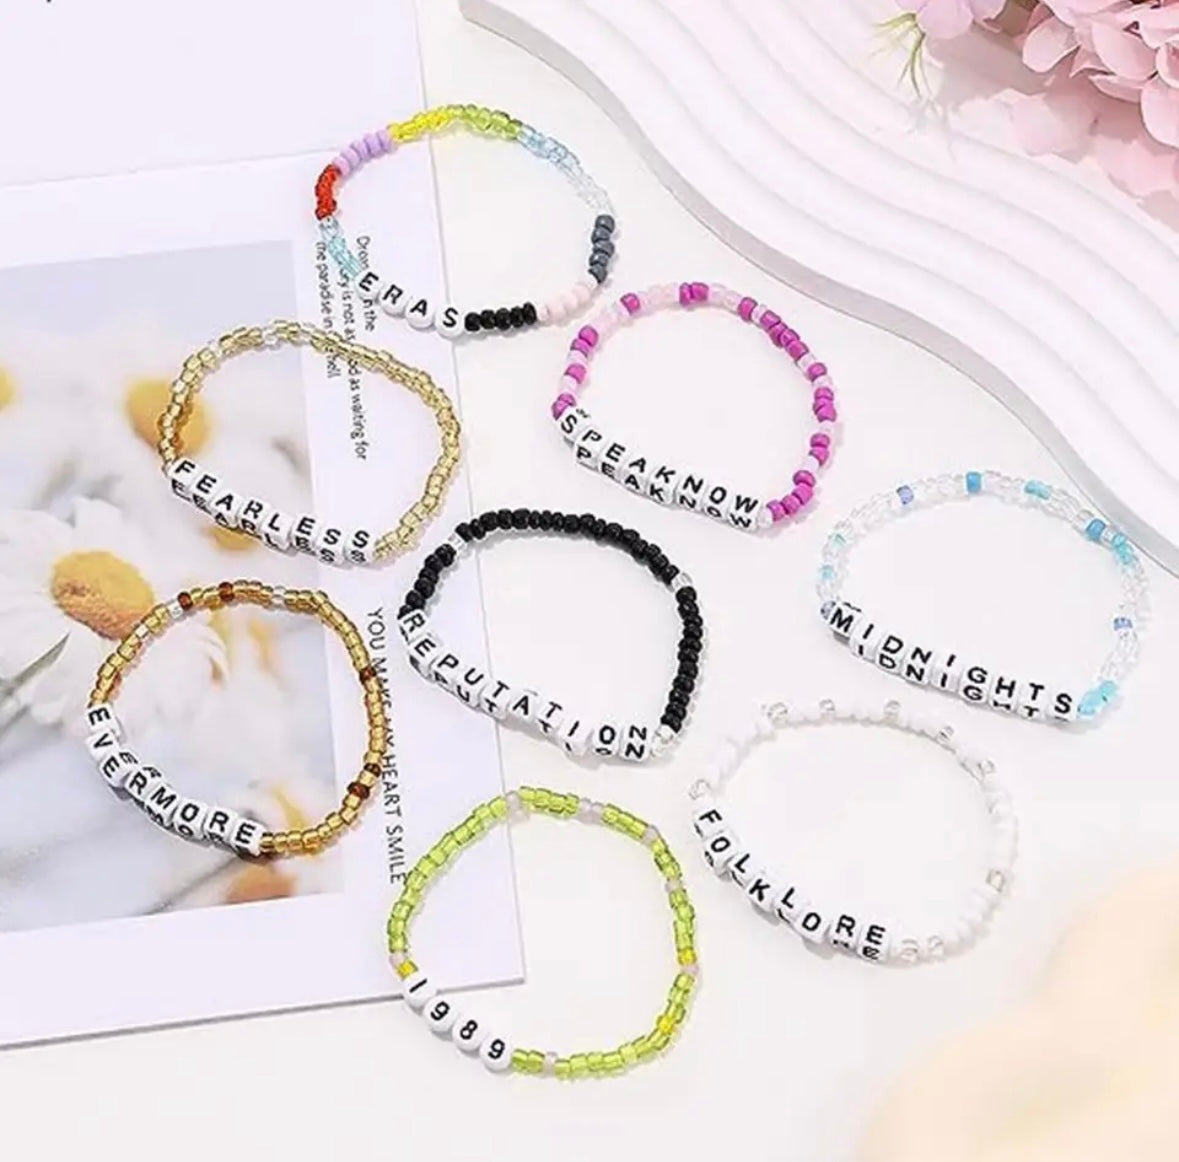 Beaded Friendship Bracelets - Set of 11 + One Surprise Freebie